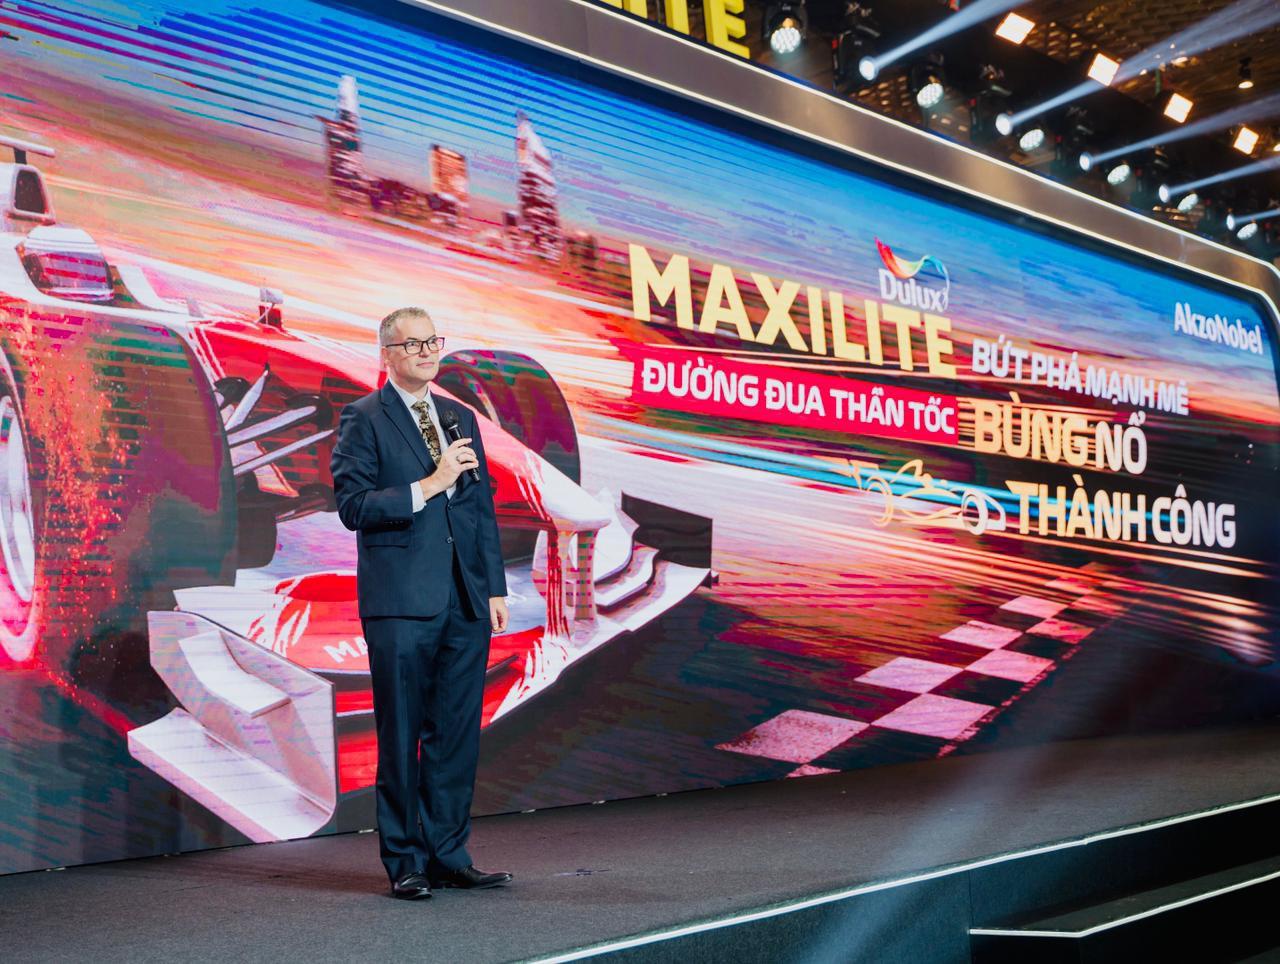 AkzoNobel nâng cấp nhận diện thương hiệu, giới thiệu danh mục sản phẩm sơn Maxilite từ Dulux mới với nhiều lợi ích cho khách hàng Việt Nam - Ảnh 3.